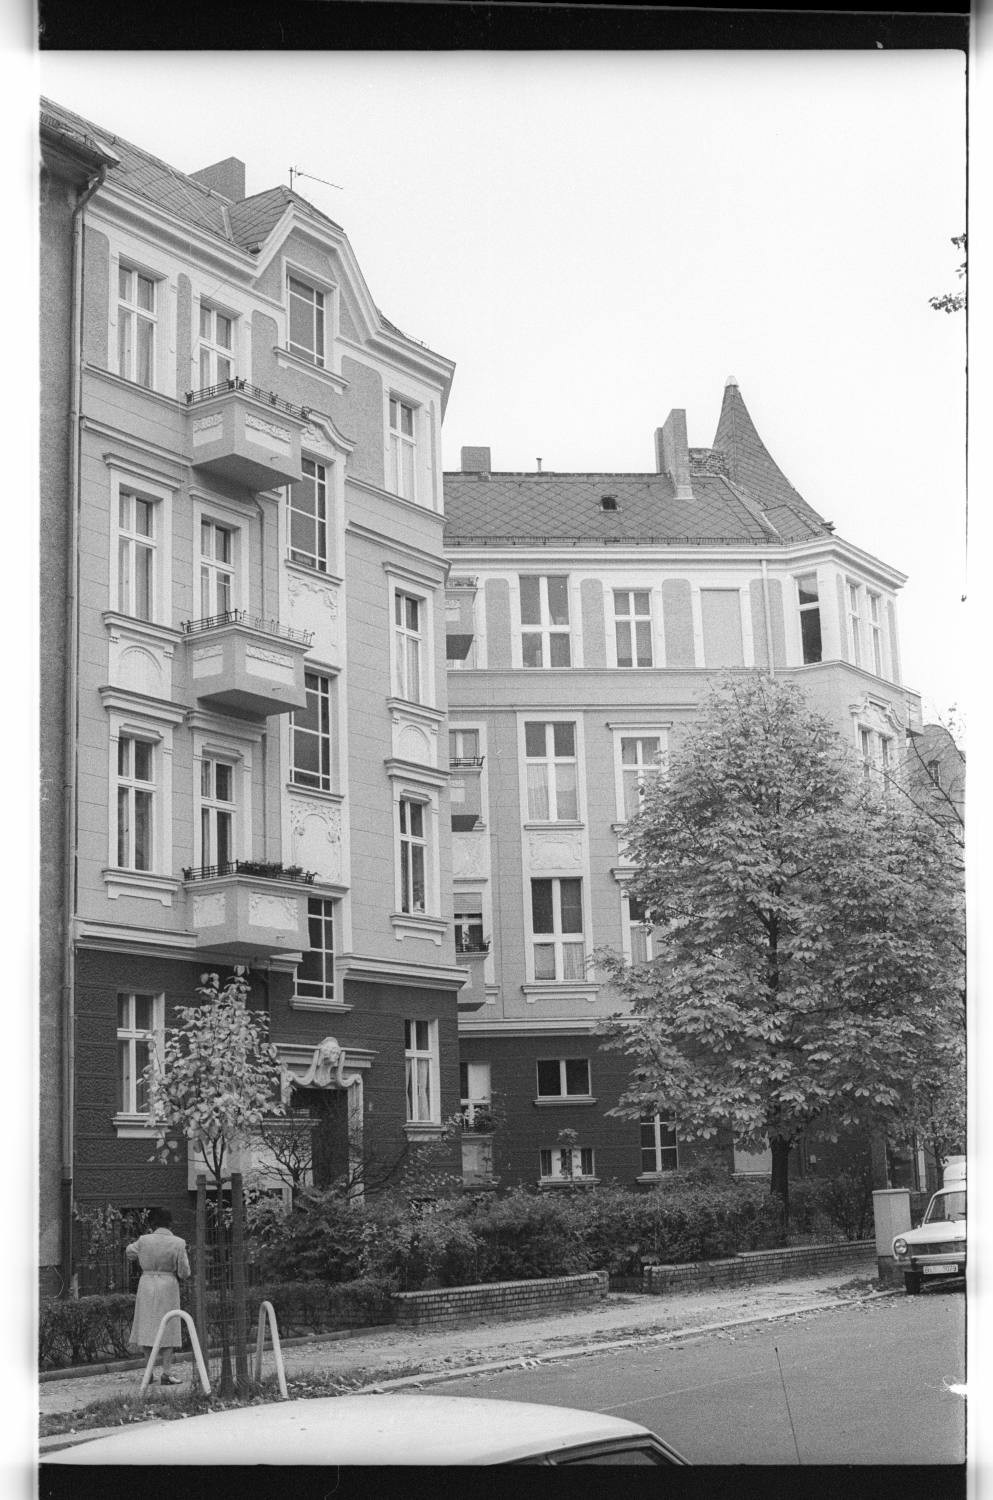 Kleinbildnegative: Mietshaus, Peter-Vischer-Straße Ecke Thorwaldsenstraße, 1979 (Museen Tempelhof-Schöneberg/Jürgen Henschel RR-F)